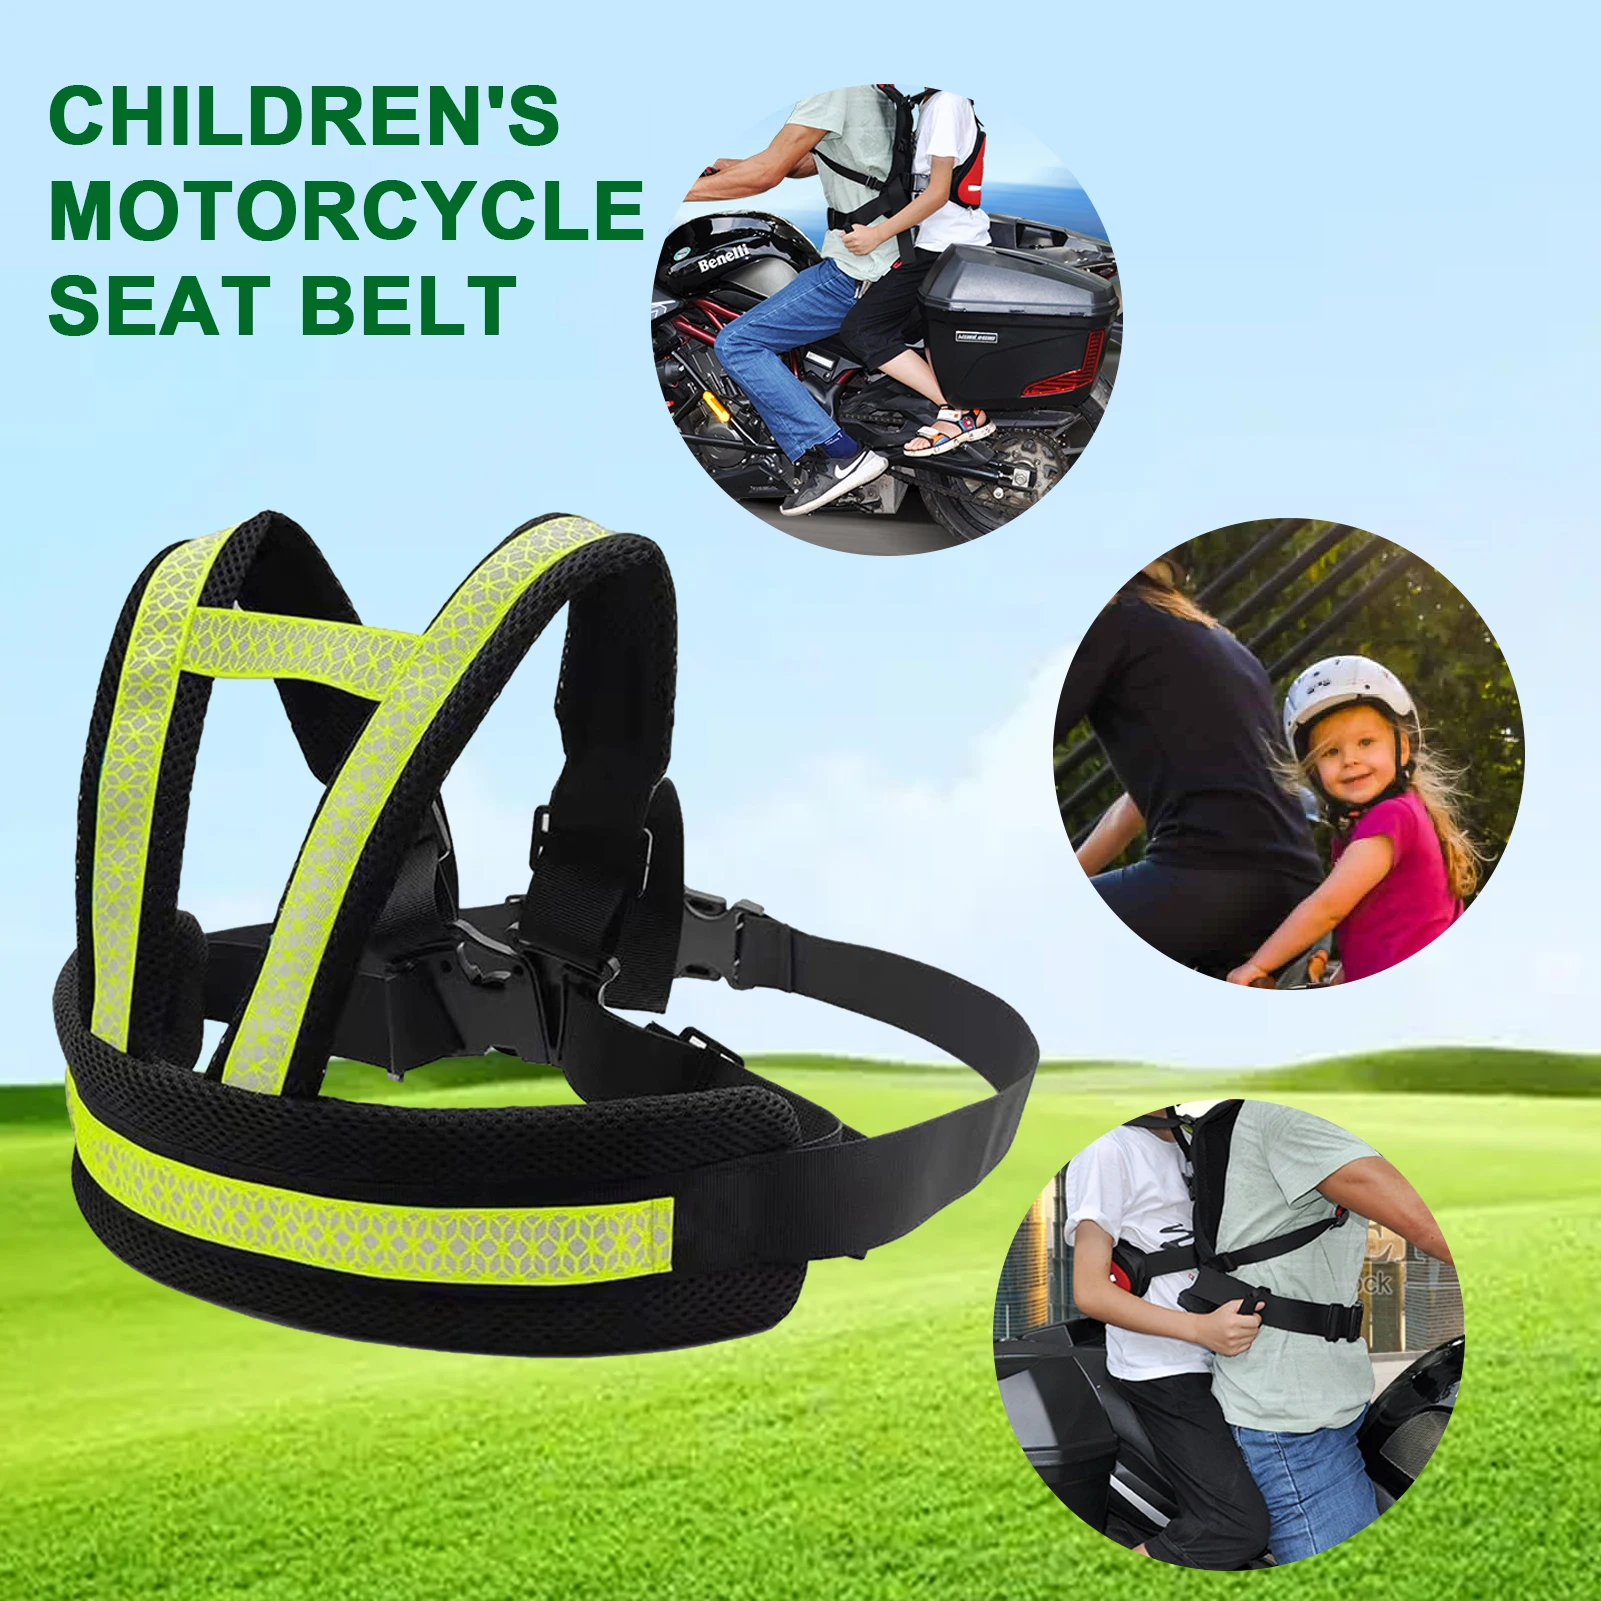 Cinturón de seguridad para niños, arnés de seguridad para asiento trasero, para montar en bicicleta y motocicleta